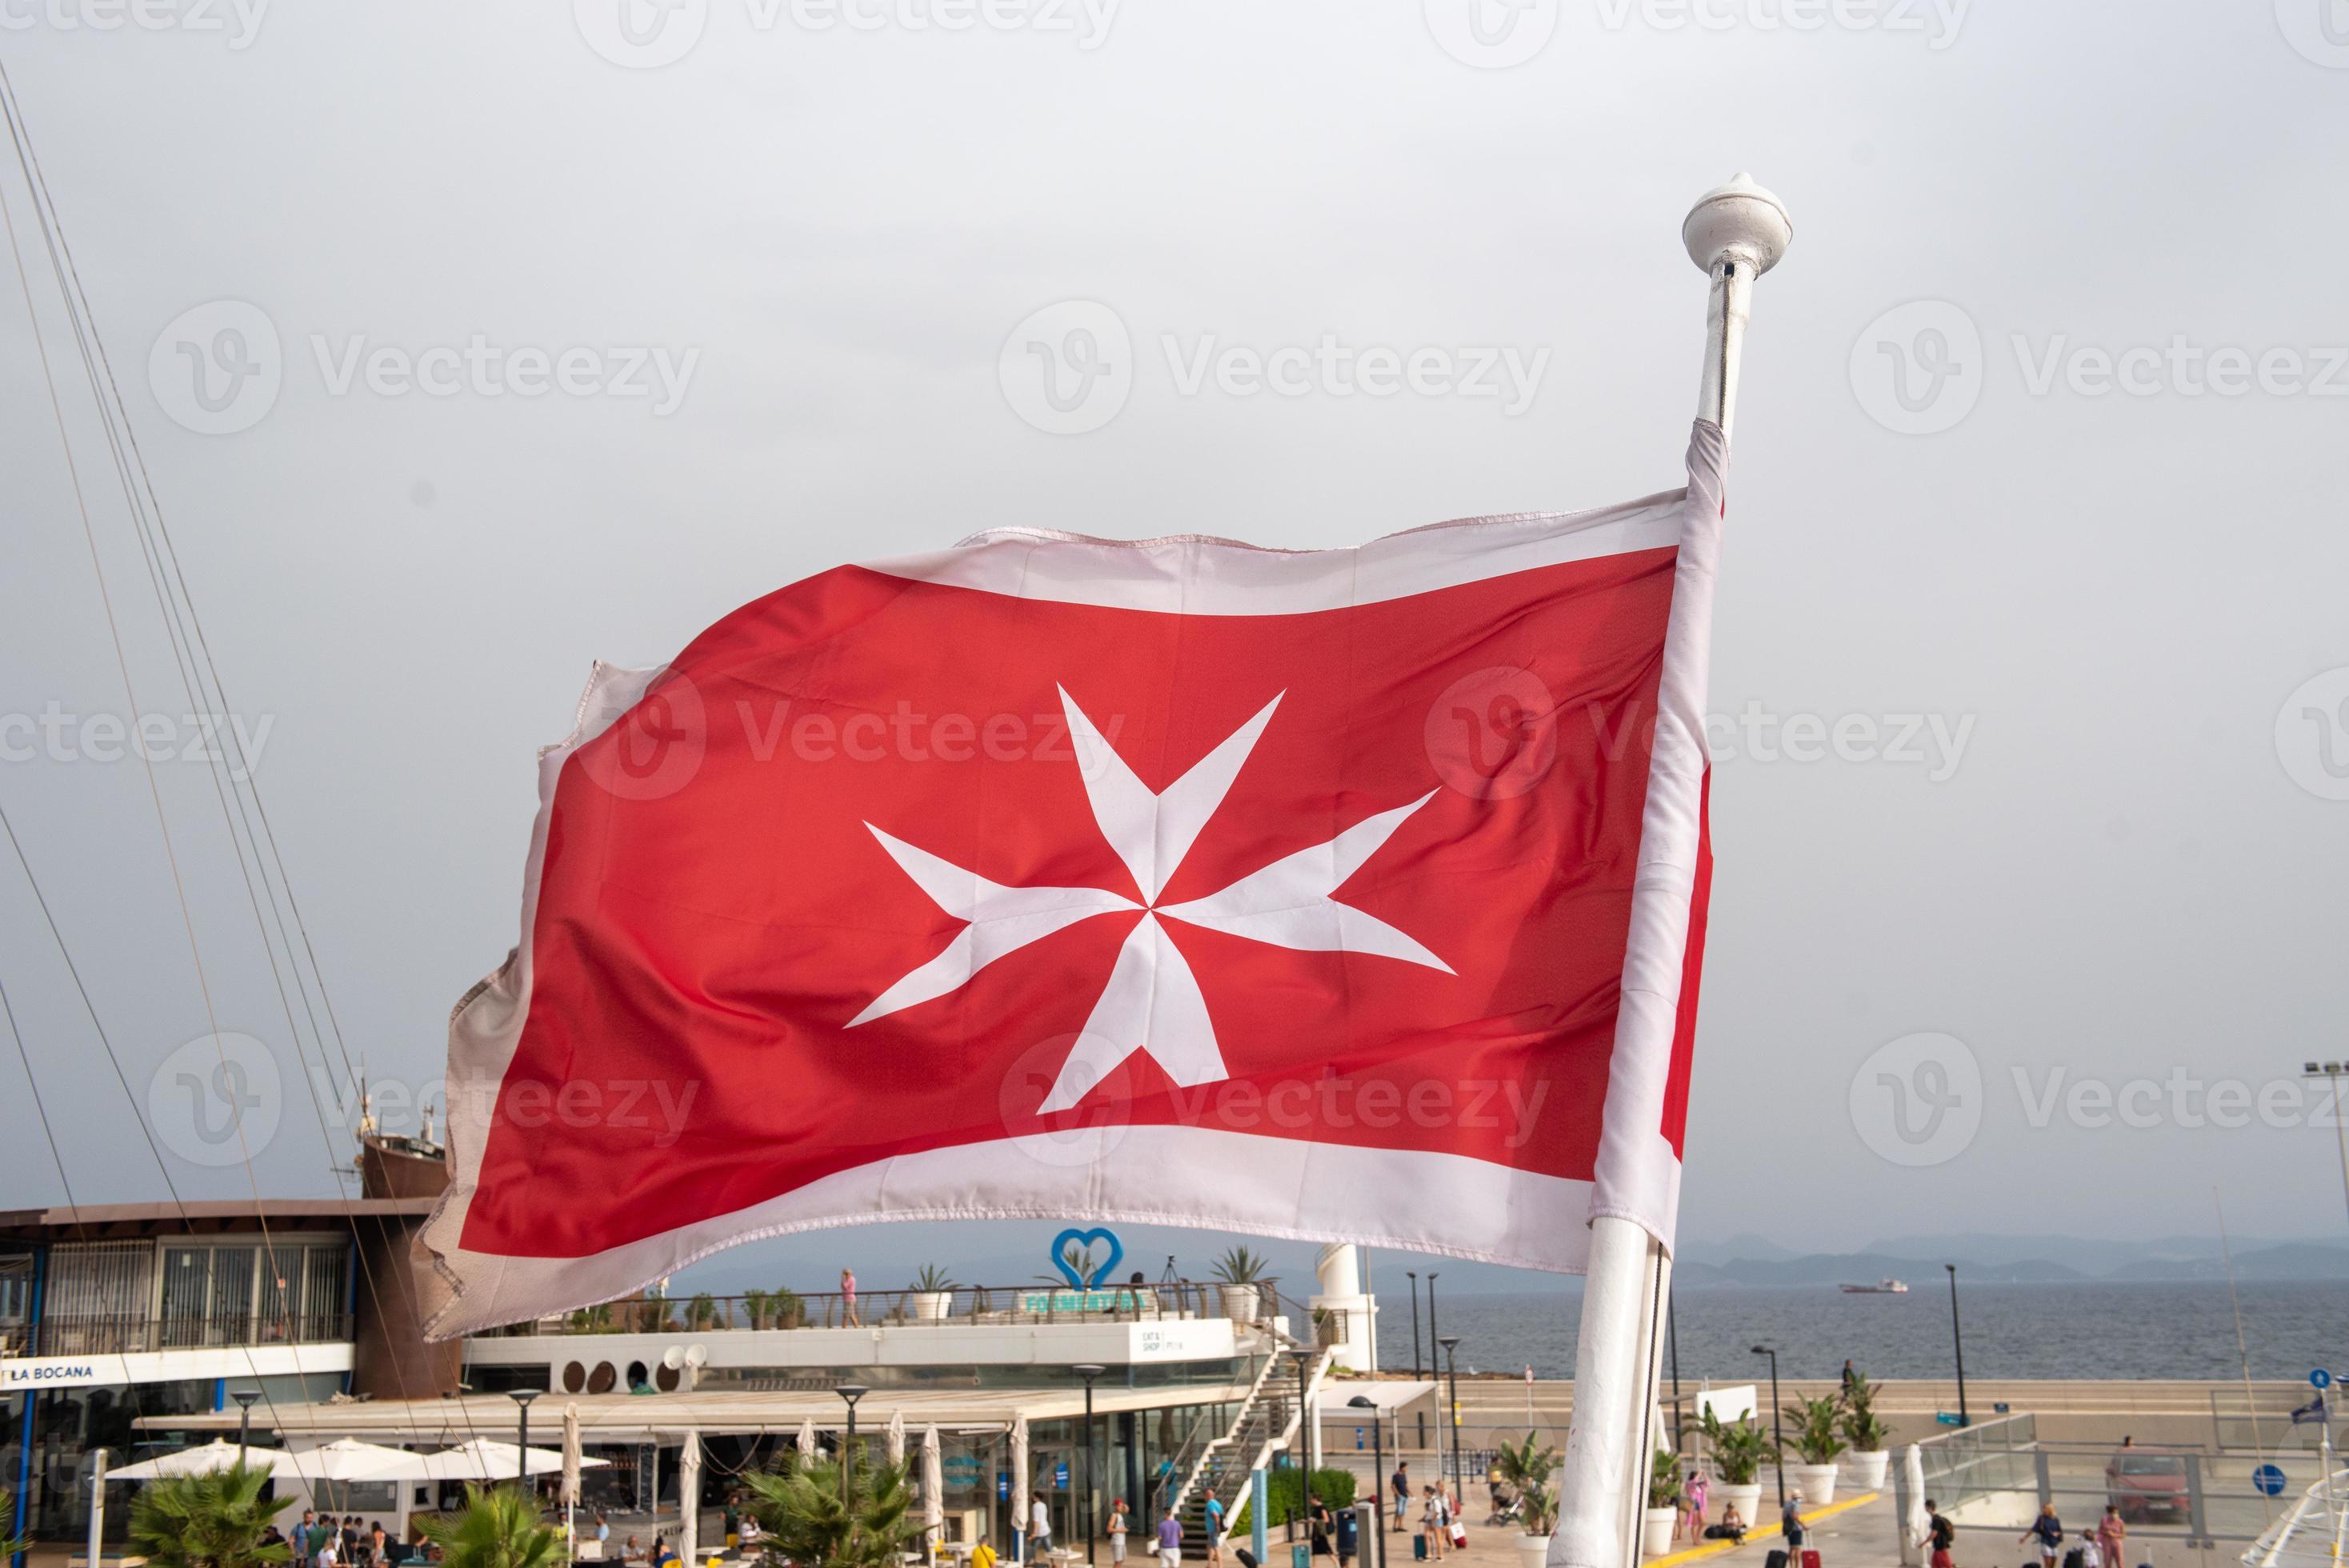 ik draag kleding vooroordeel reptielen Maltese vlag op een luxe boot verankerd in de jachthaven van griekenland.  oude Maltese vlag, wit kruis op rode achtergrond zwaaien op achtersteven  van jacht. blauwe hemelachtergrond. 4828342 stockfoto bij Vecteezy